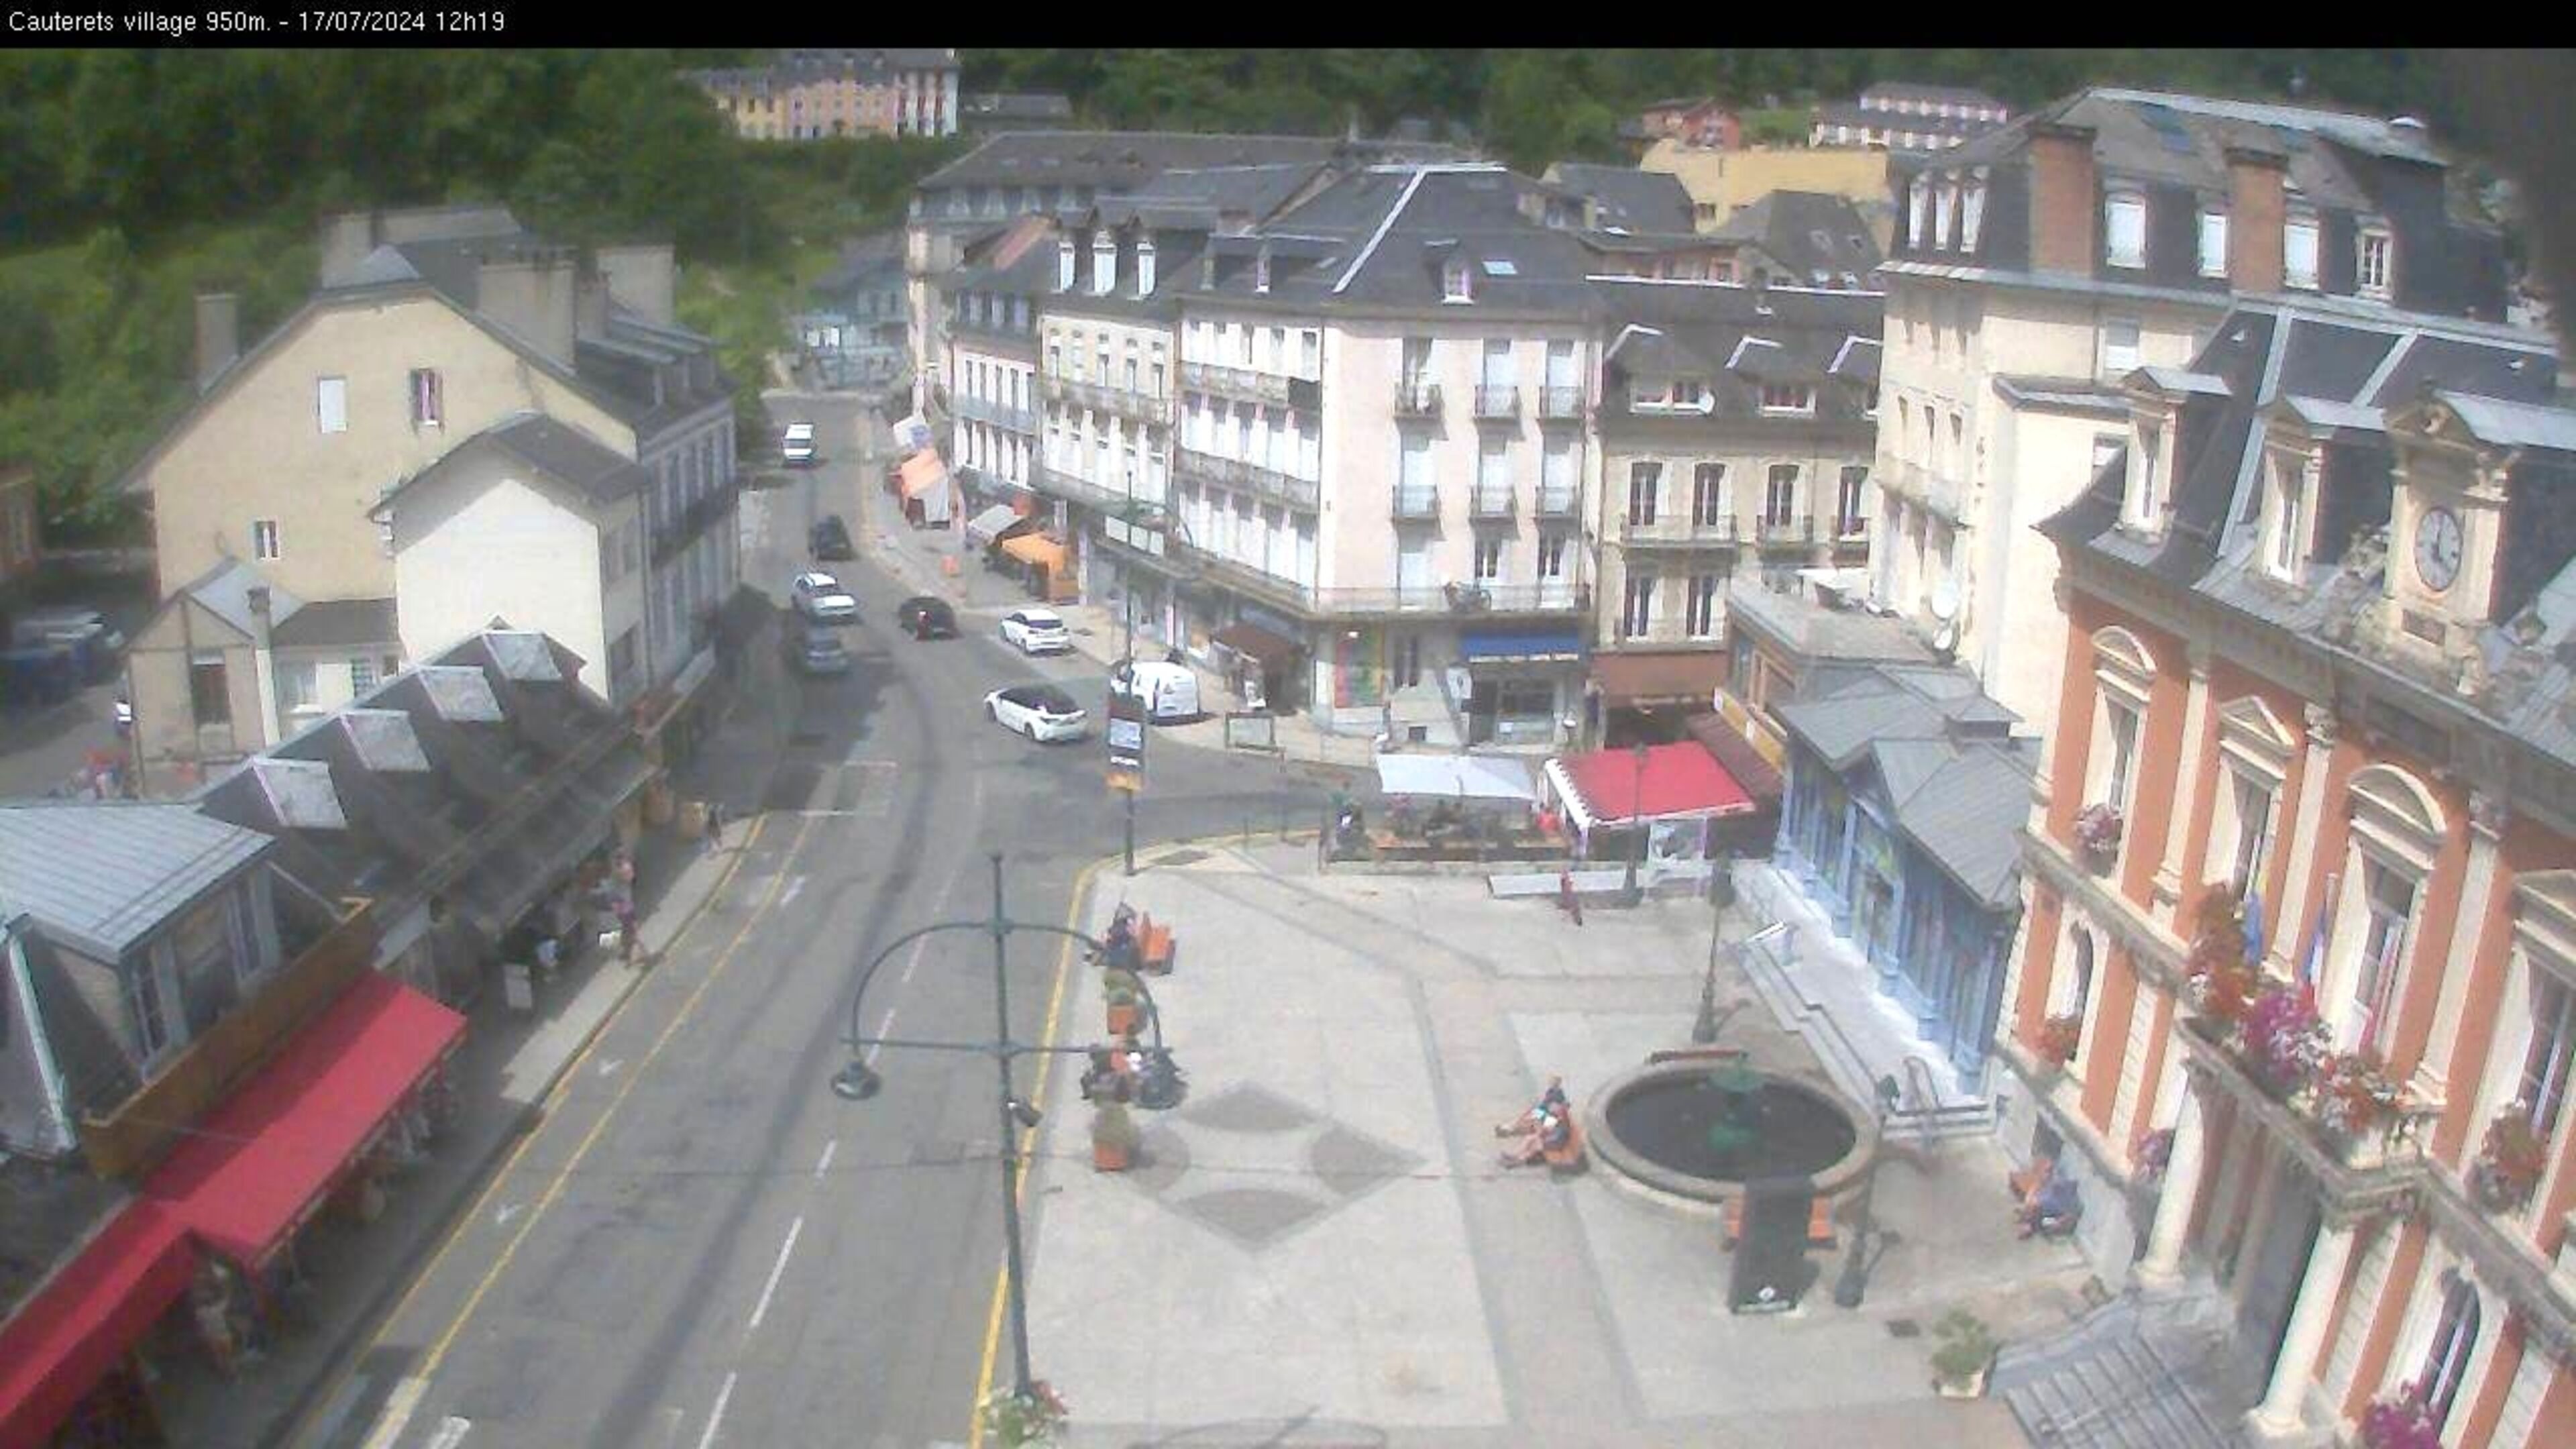 <h2>Webcam dans le village de Cauterets à 945 mètres d'altitude dans les Pyrénées. Vue sur la D920</h2>